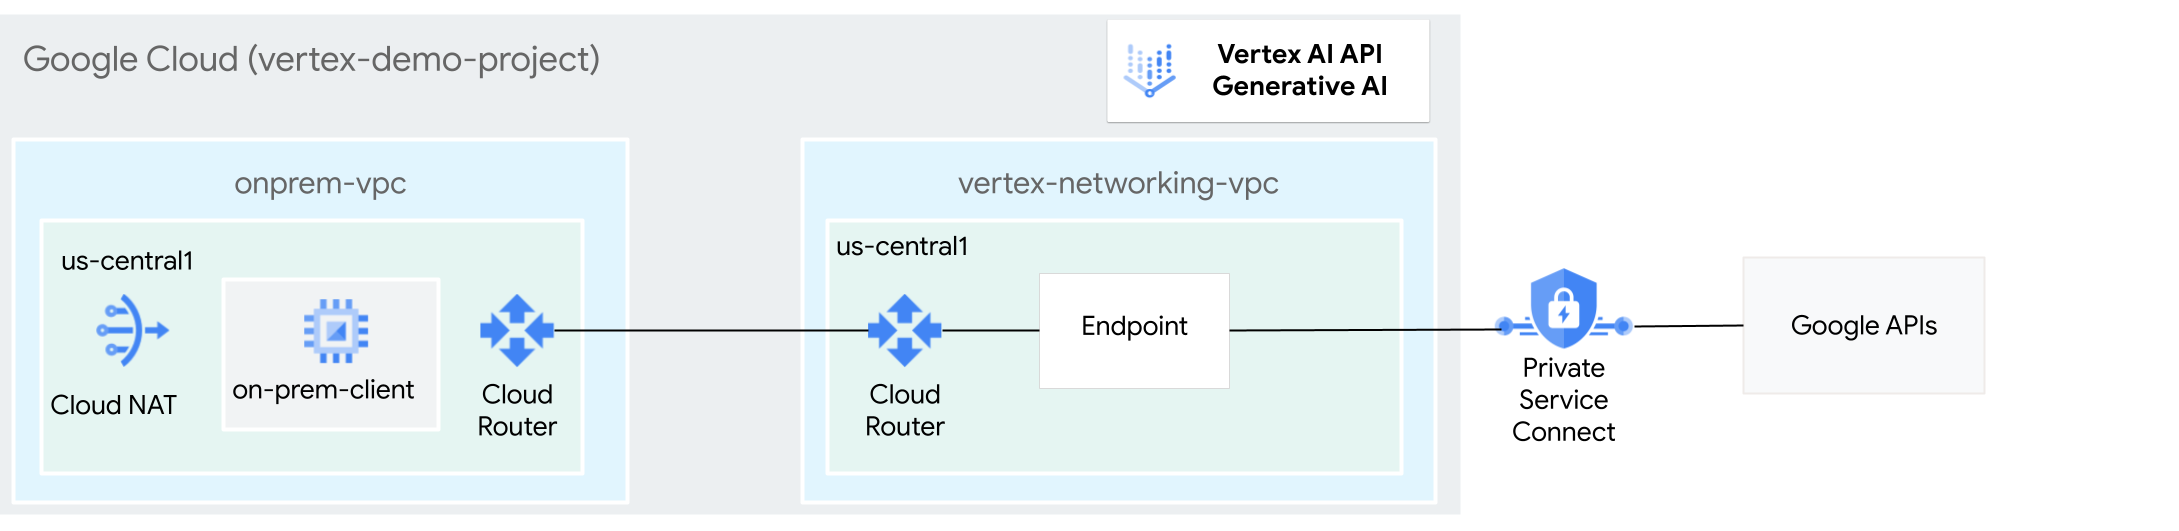 Diagramma dell'architettura dell'utilizzo di Private Service Connect per accedere a Generative AI su Vertex AI.